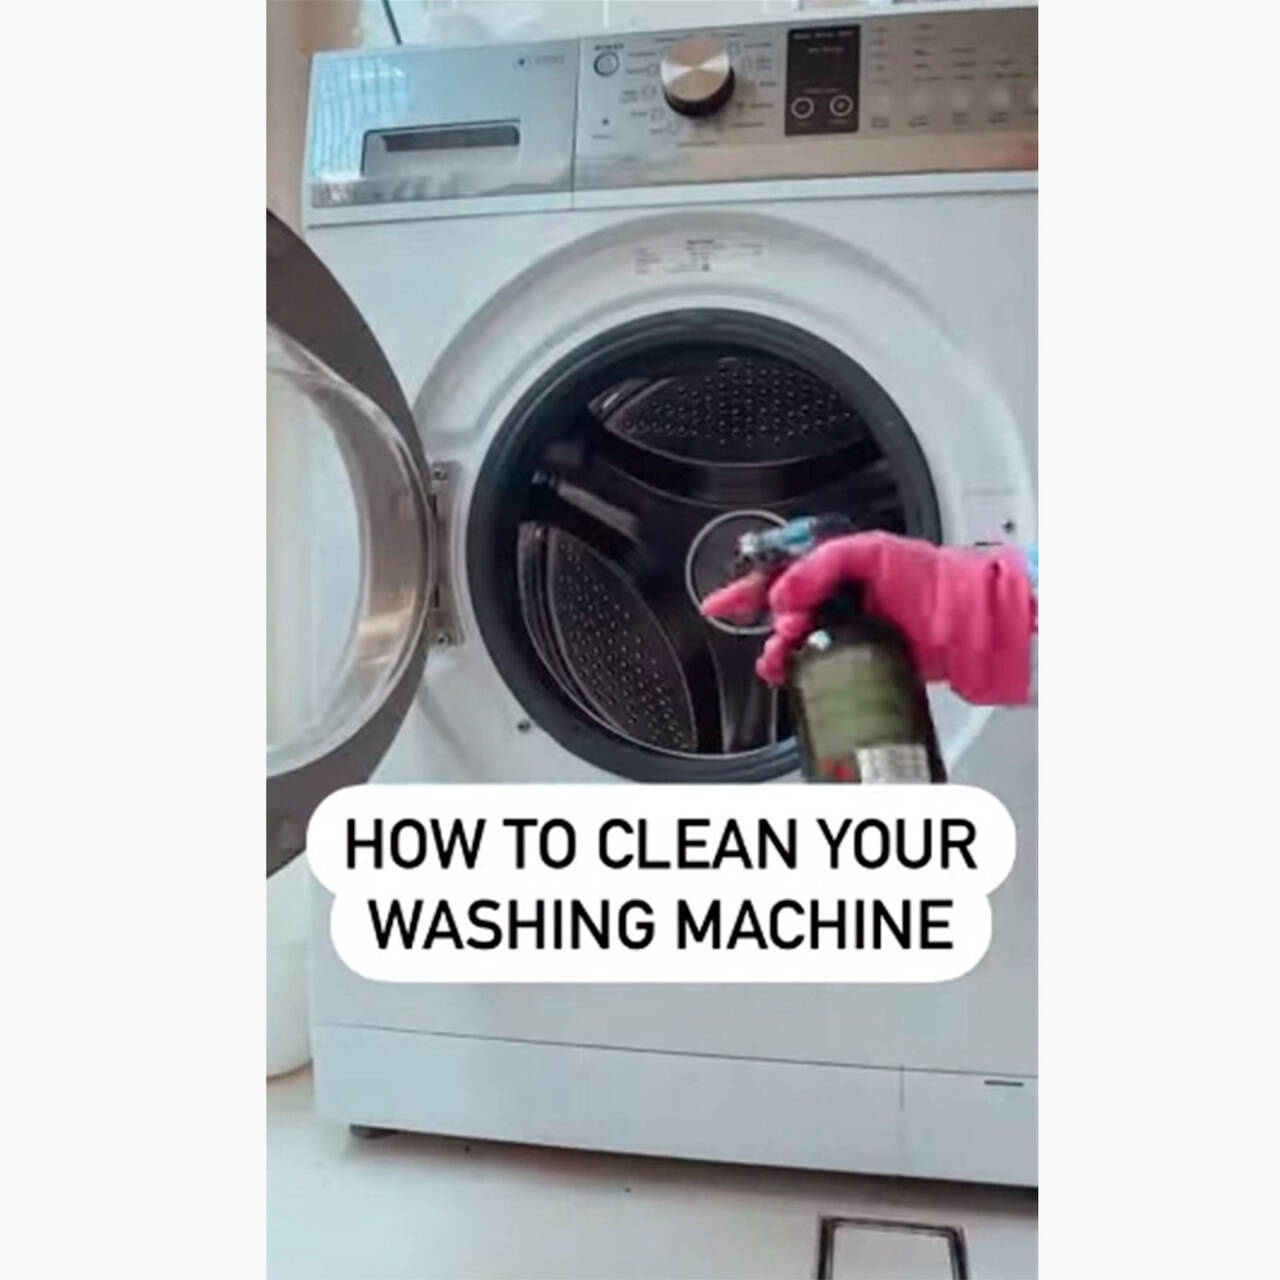 Пахнет белье после стирки в стиральной машине